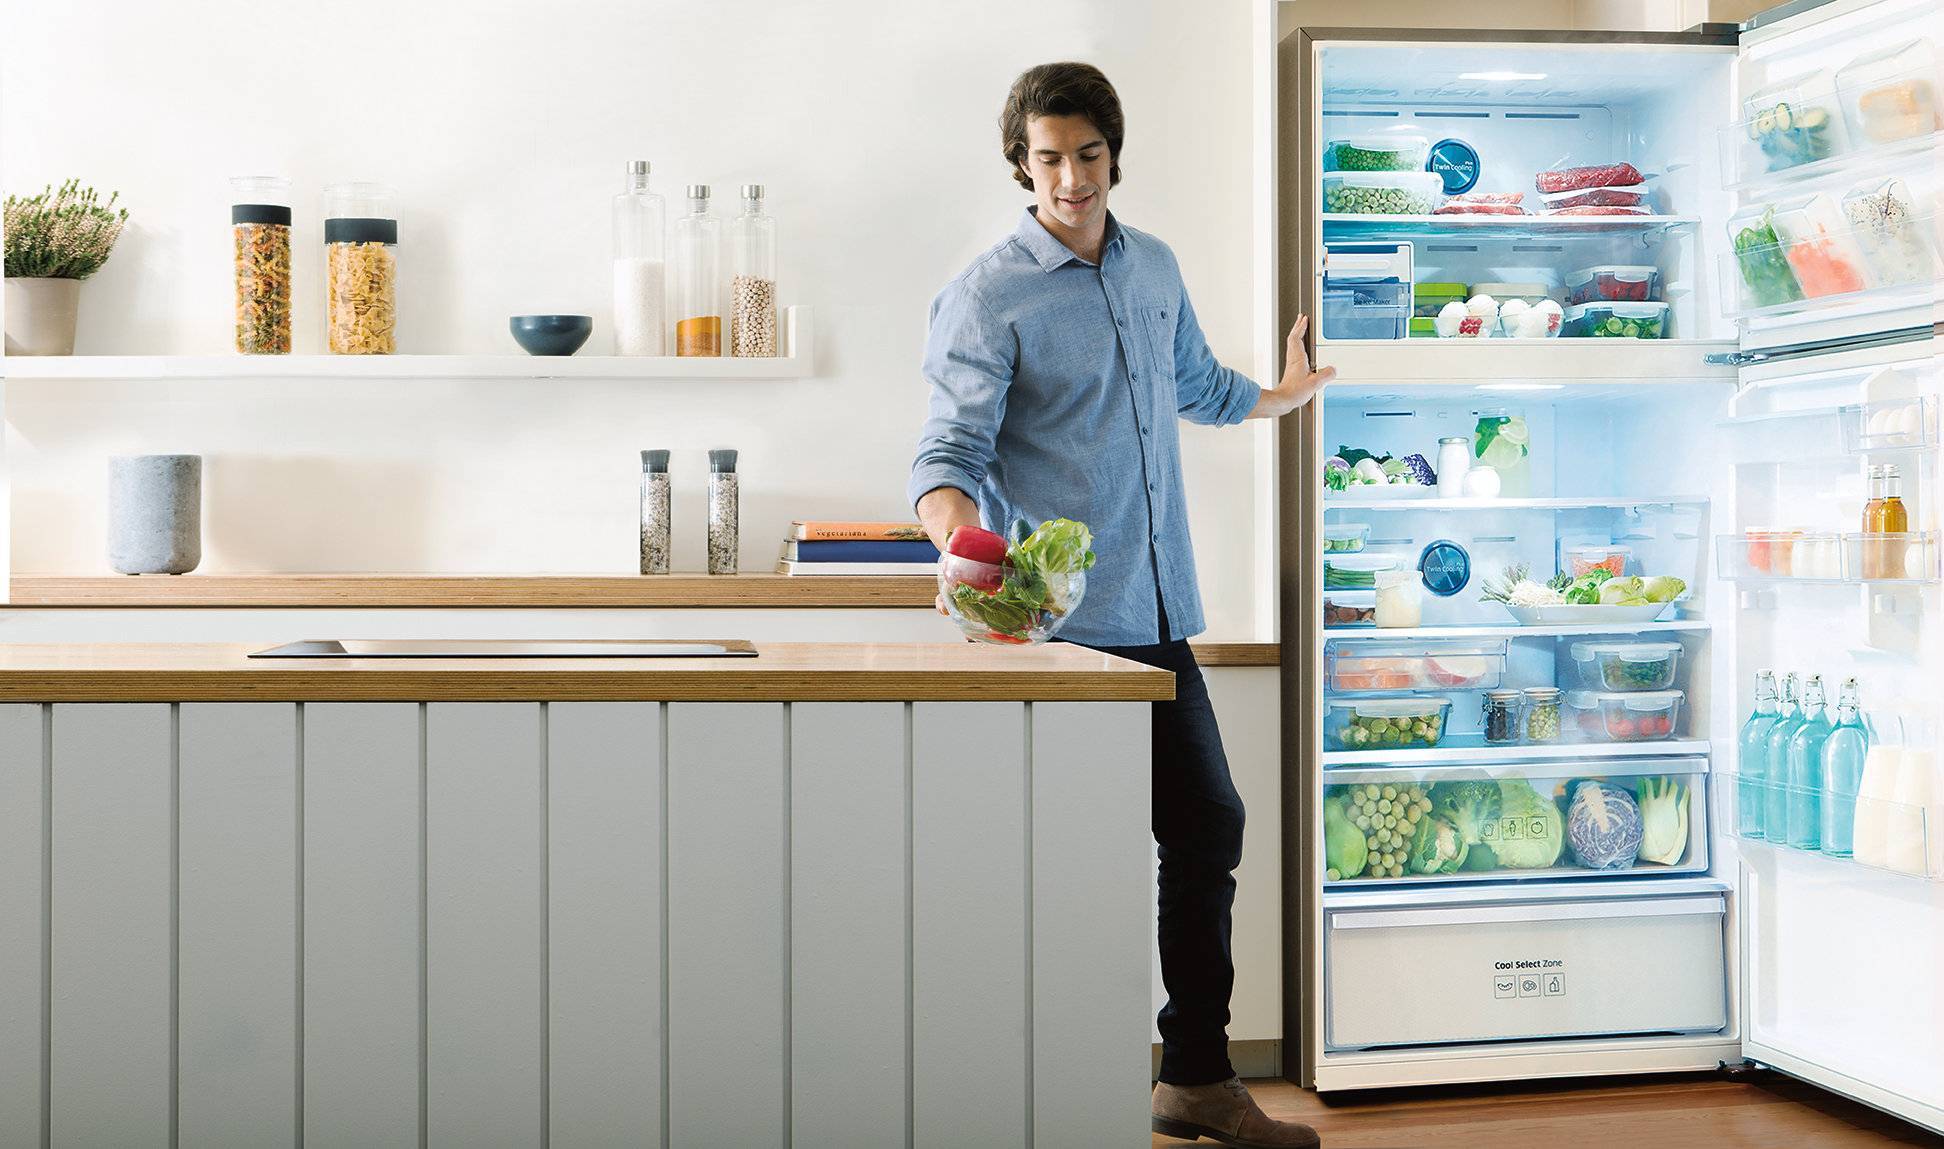 Лучшие производители холодильников: рейтинг 2021 года по качеству и надежности их моделей